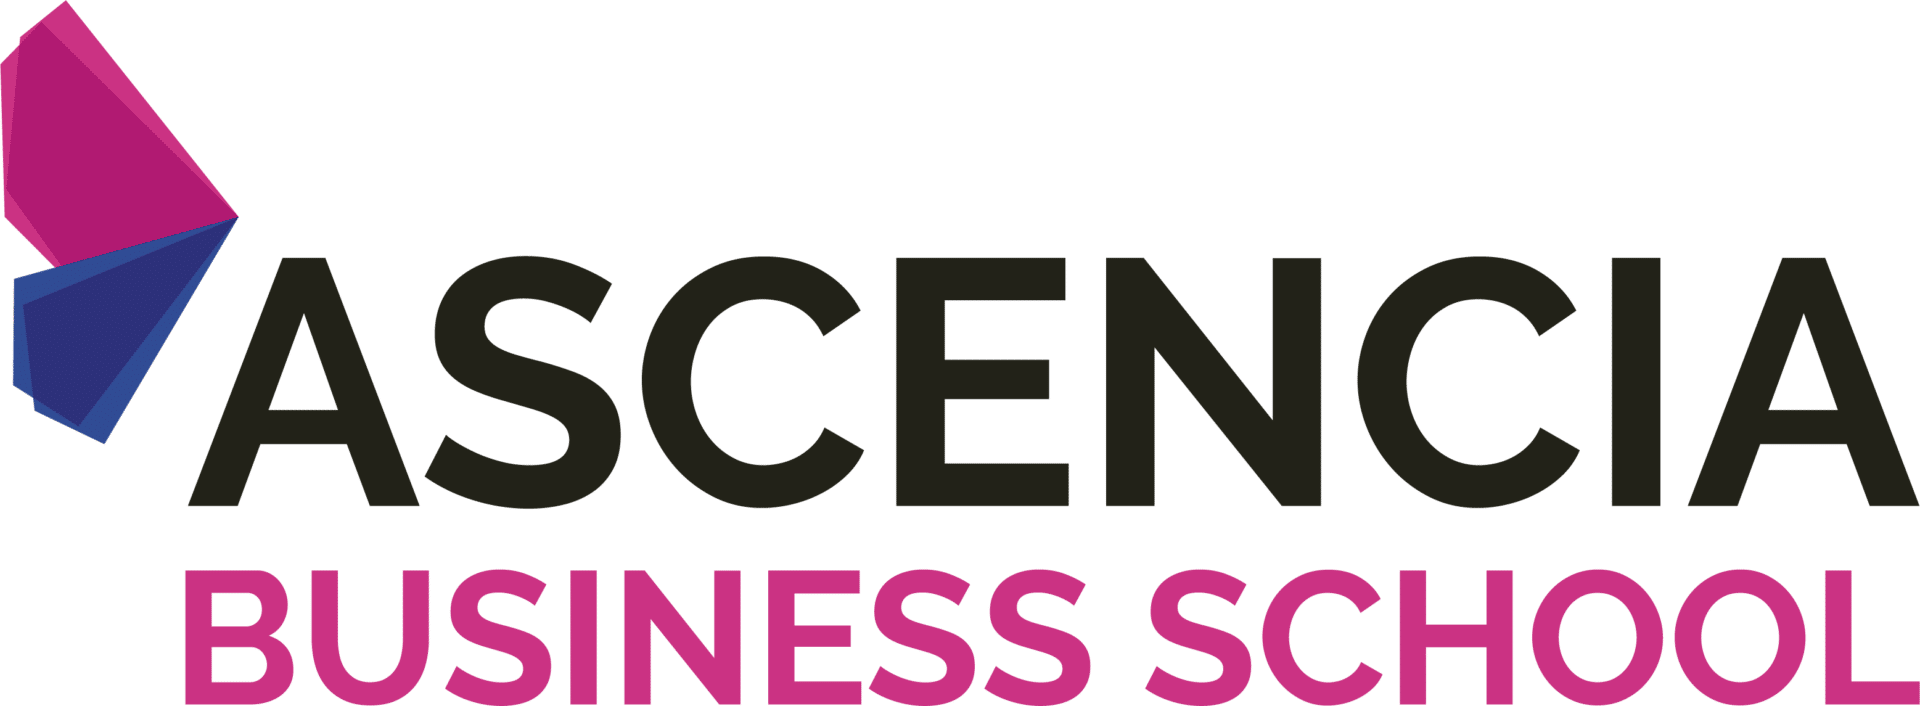 Ascencia Business school